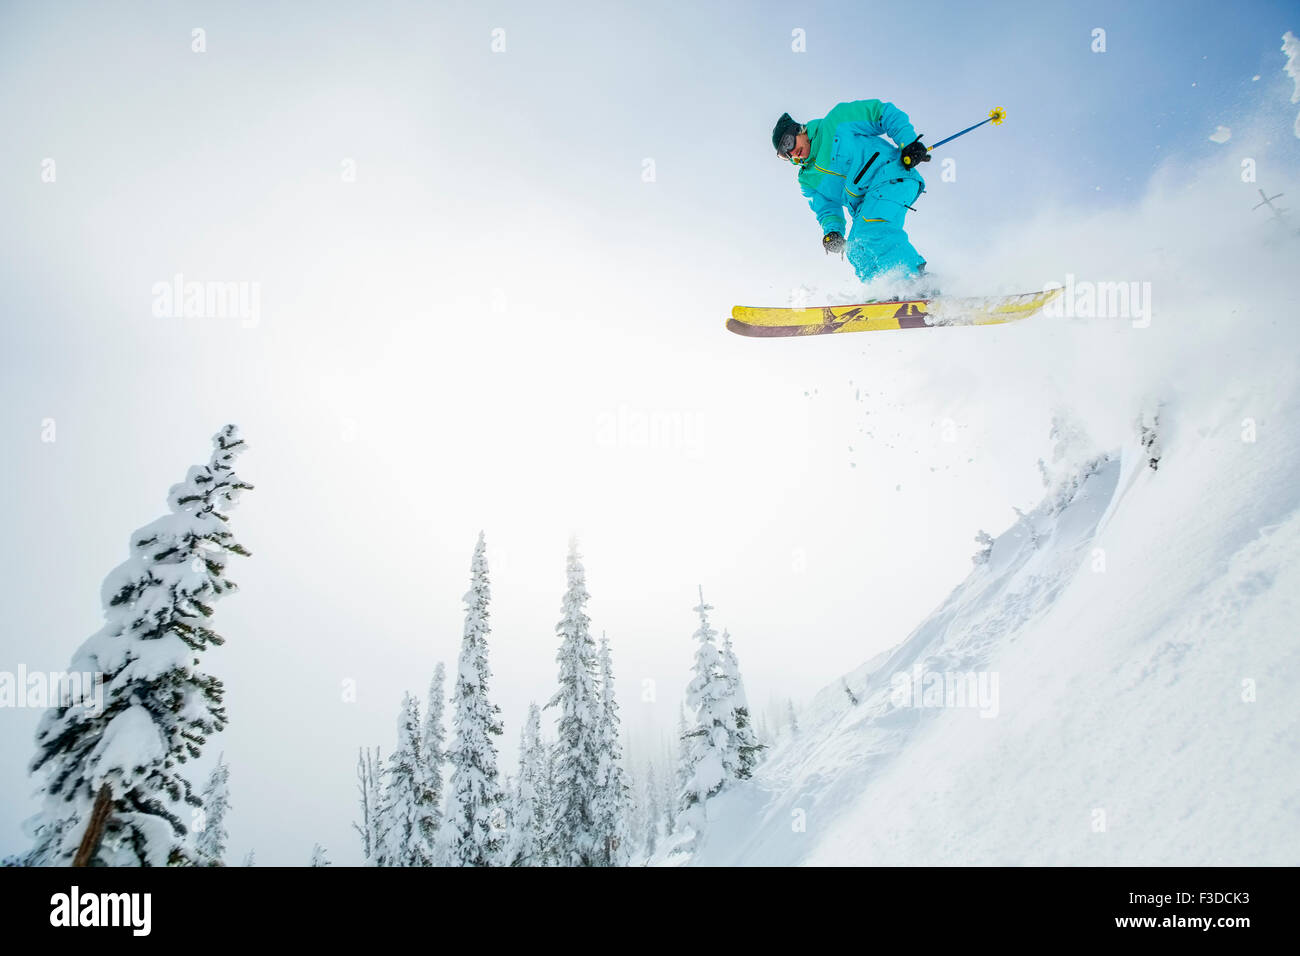 Jeune homme sautant d'une piste de ski Banque D'Images